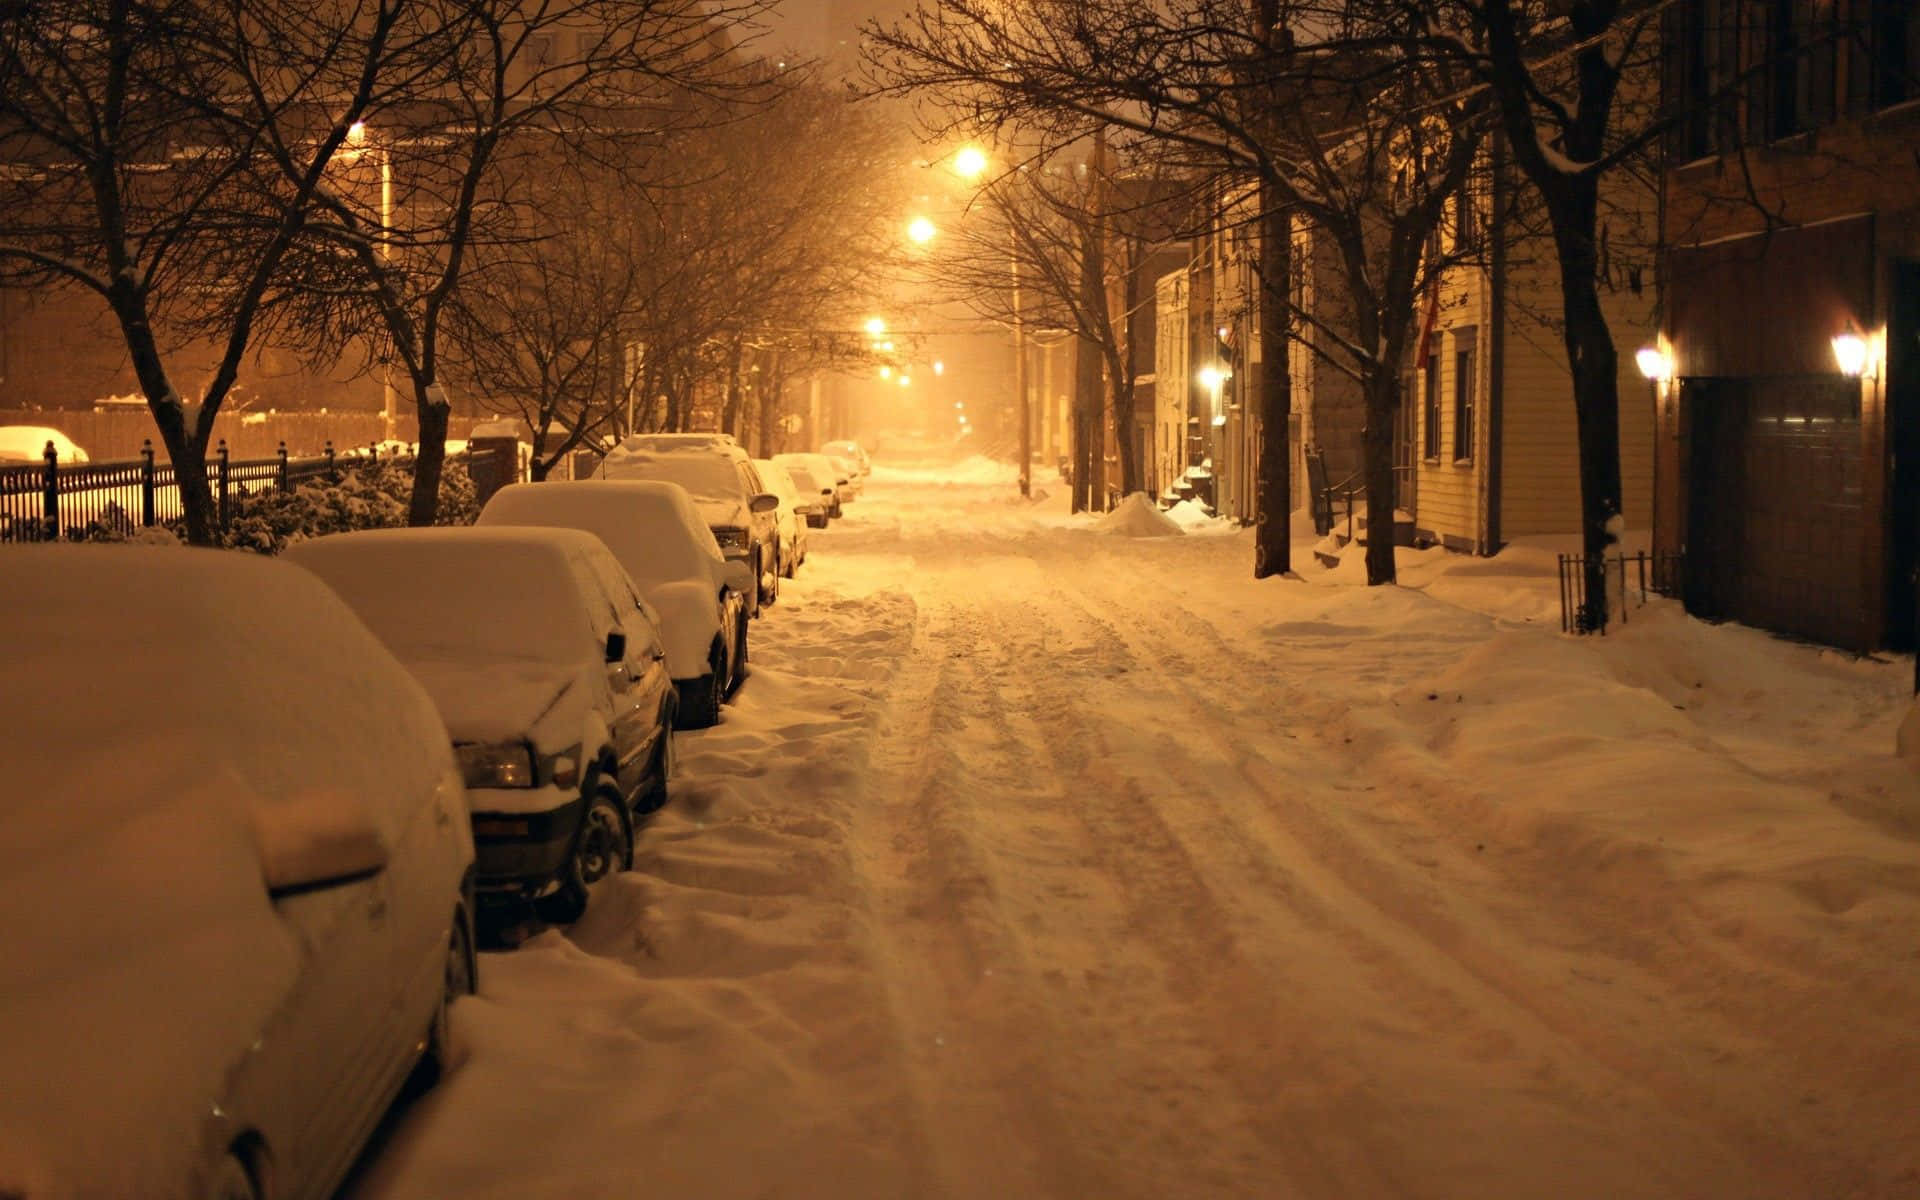 En gade med biler parkeret i sneen Wallpaper